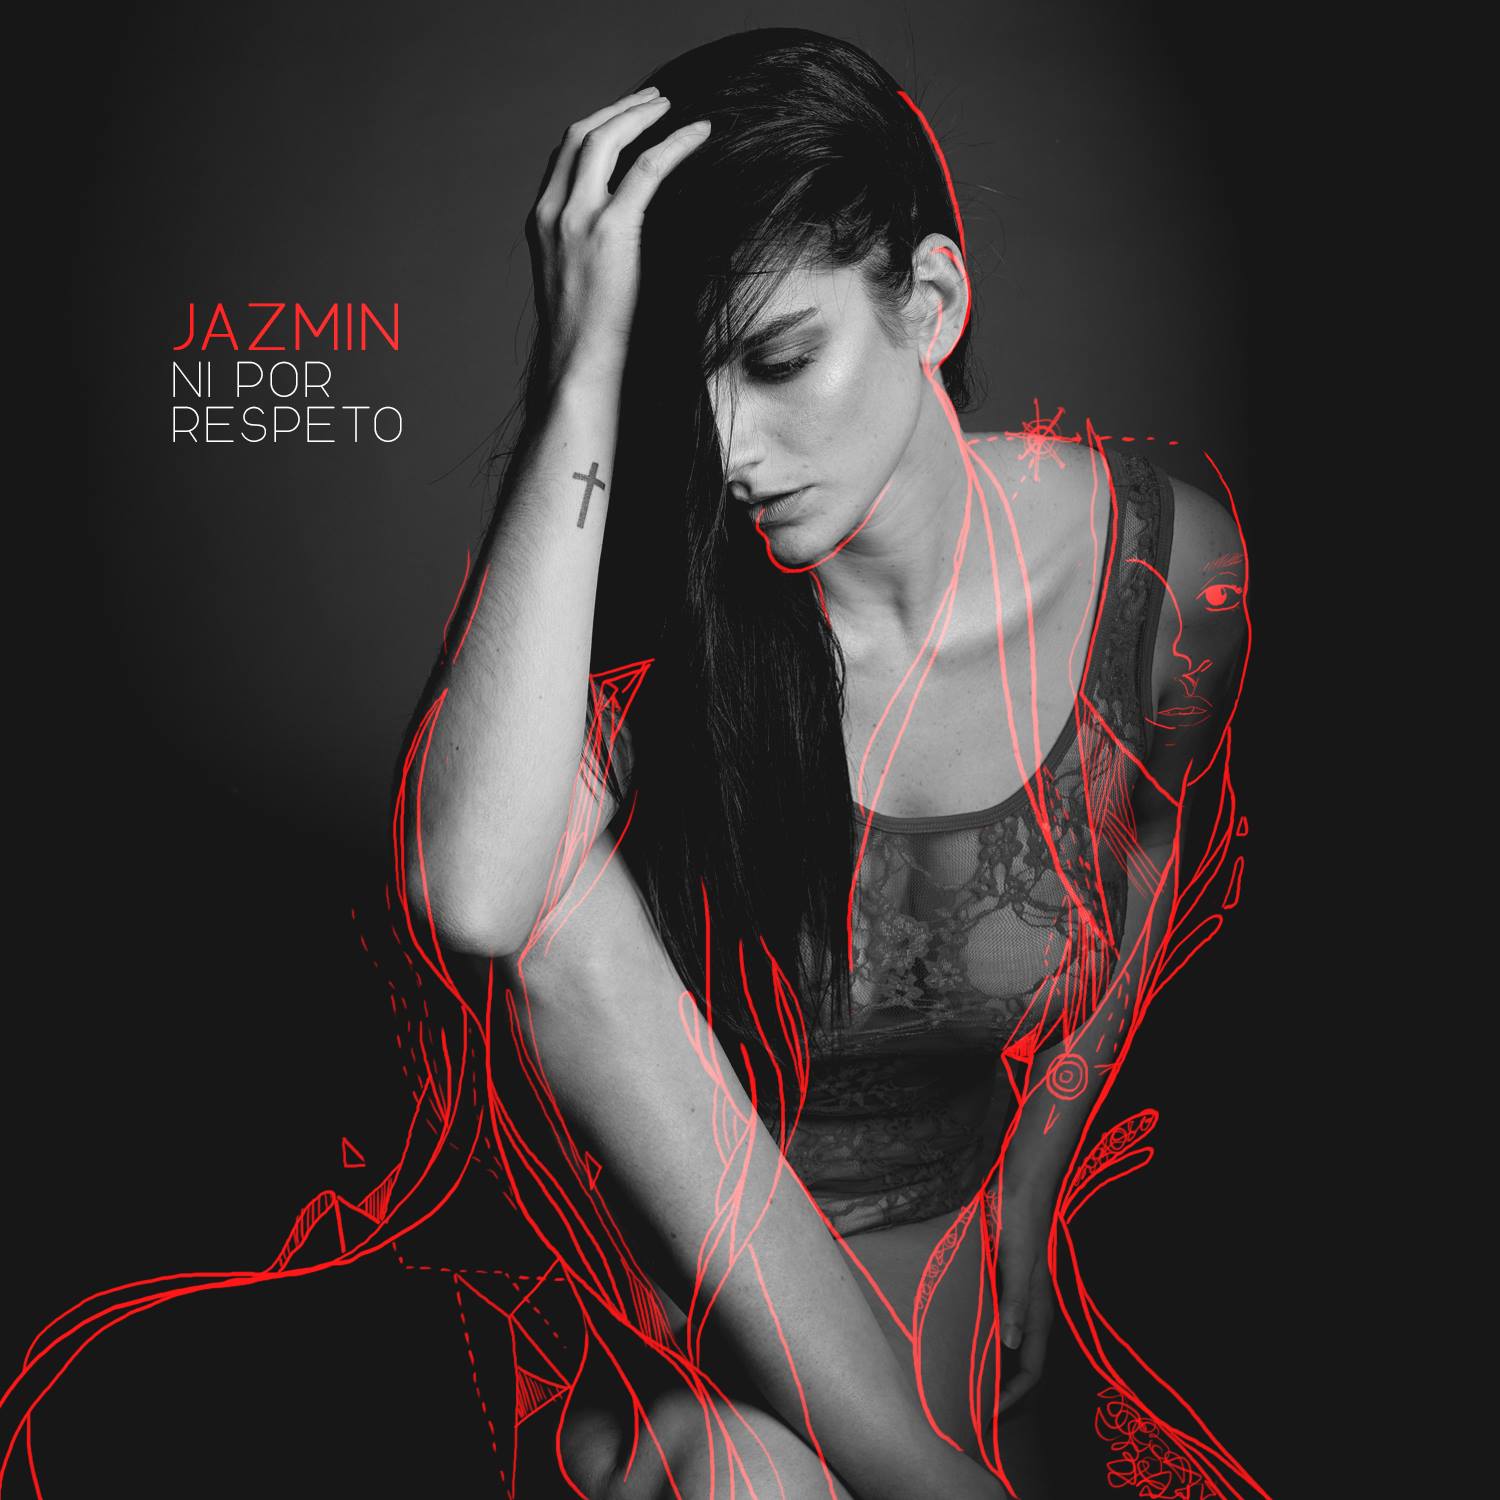 Jazmín presenta “Ni por respeto”, el primer single de su próximo disco